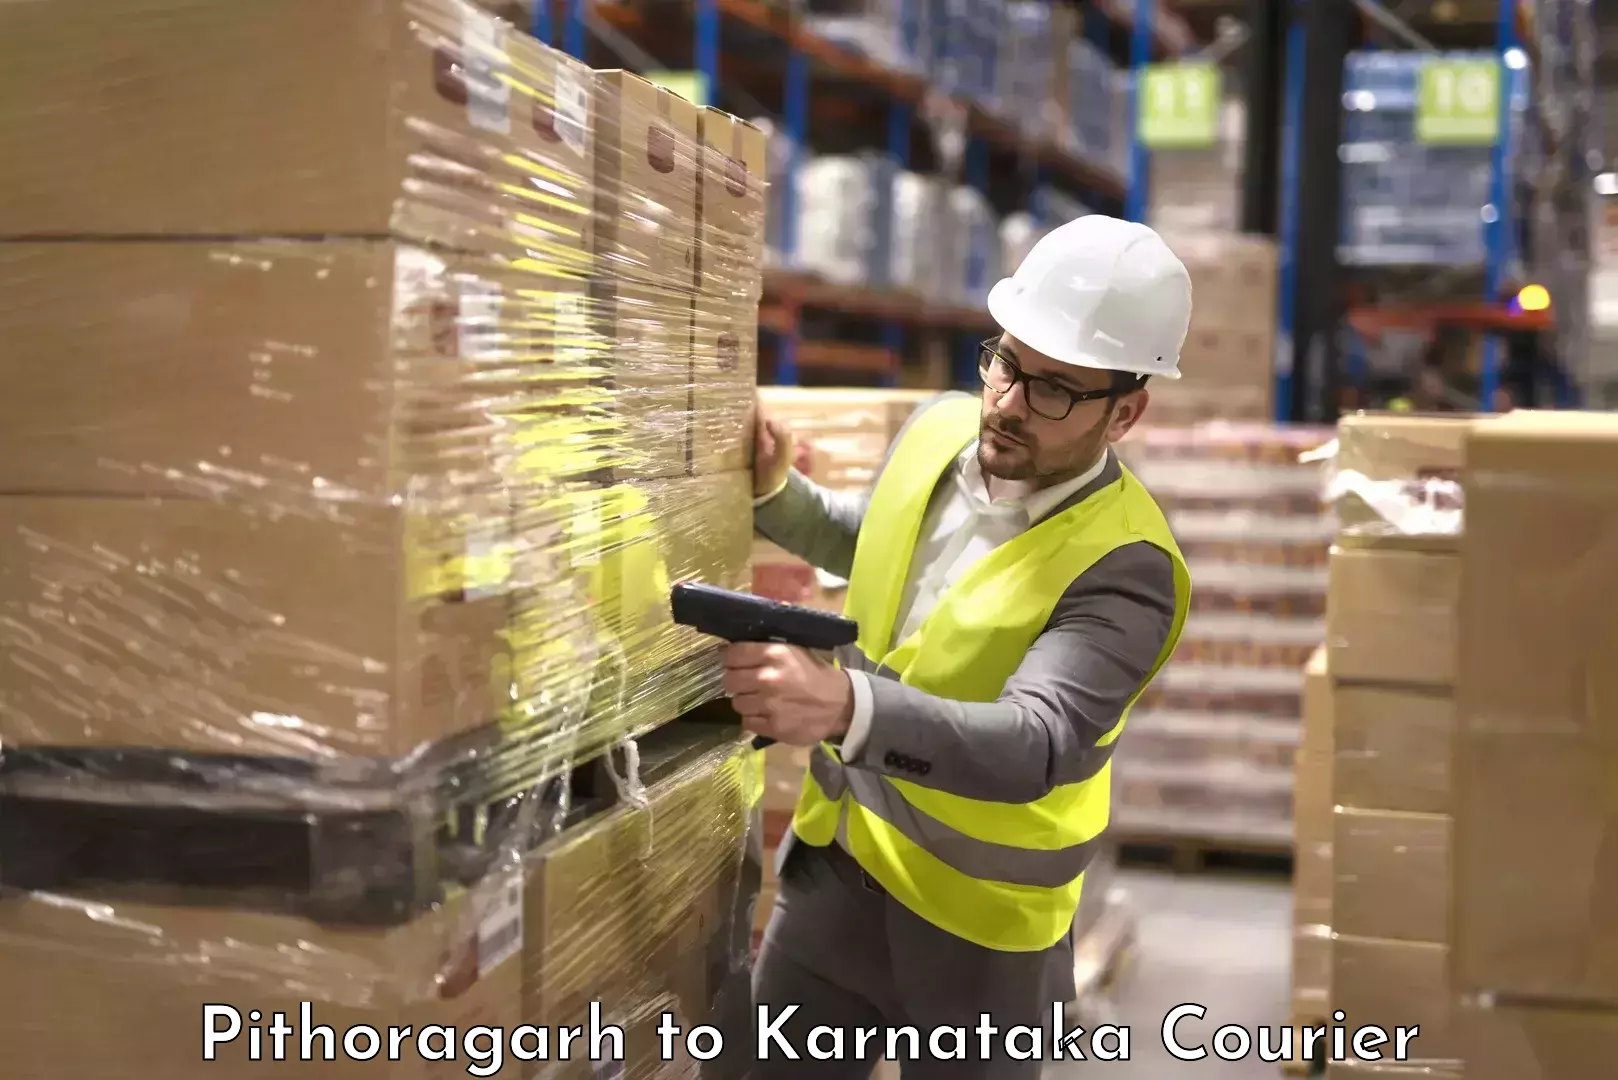 Luggage transport service Pithoragarh to Karnataka